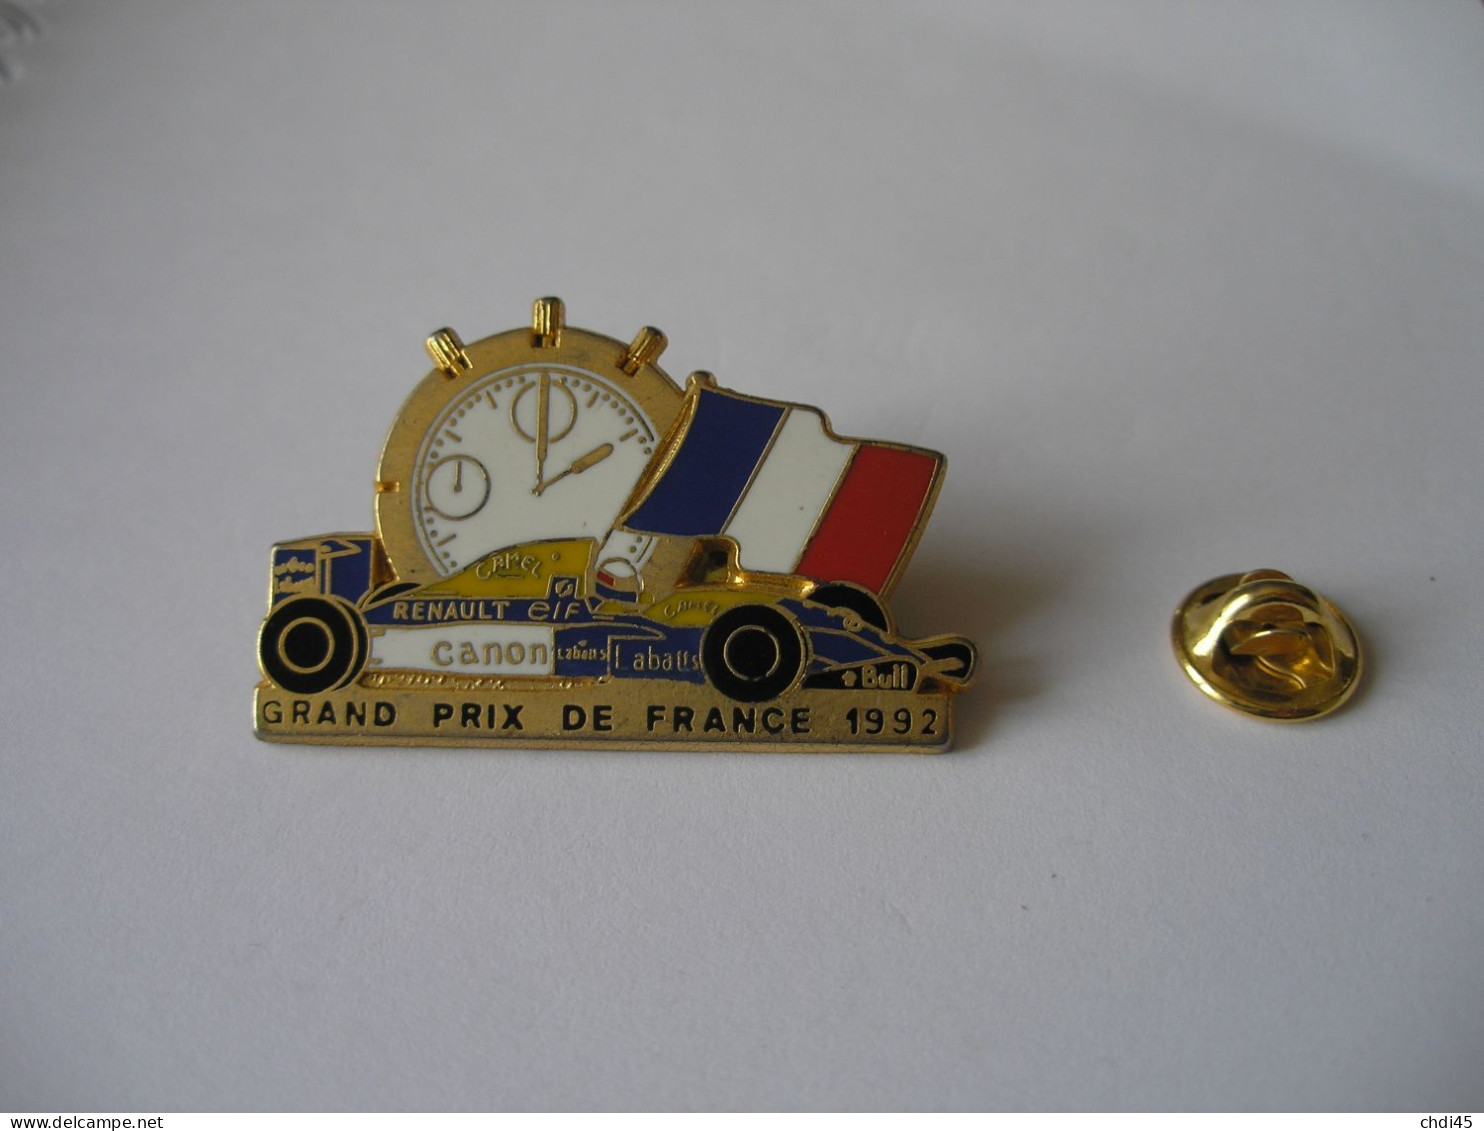 GRAND PRIX DE FRANCE 1992 - Renault